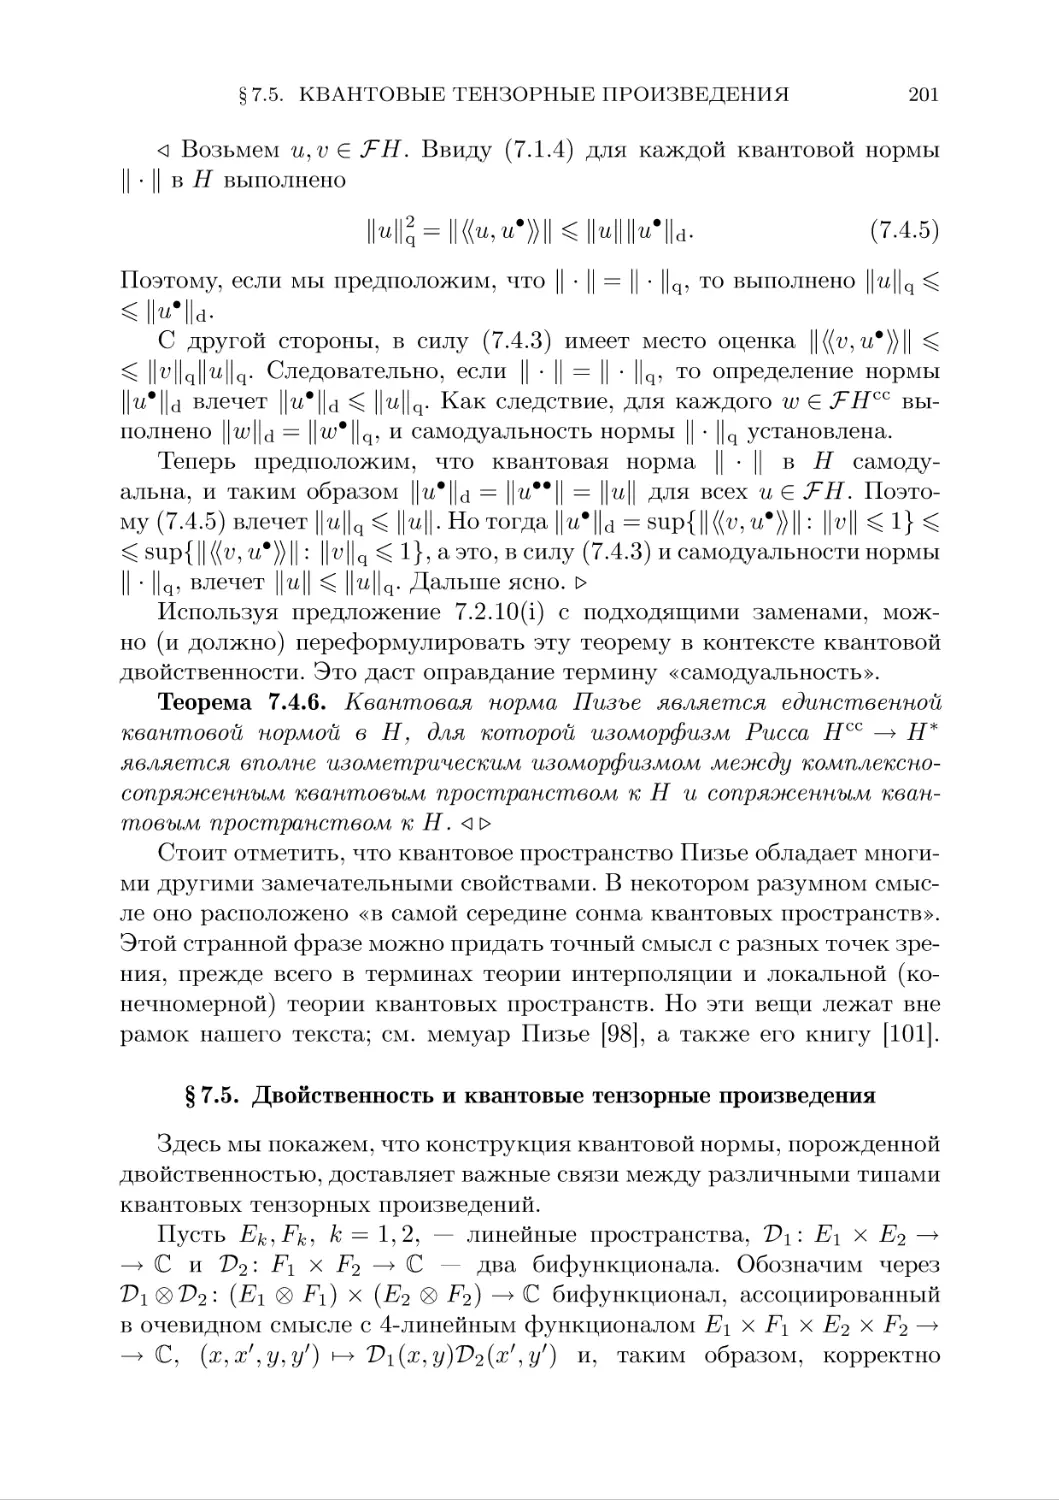 § 7.5. Двойственность и квантовые тензорные произведения